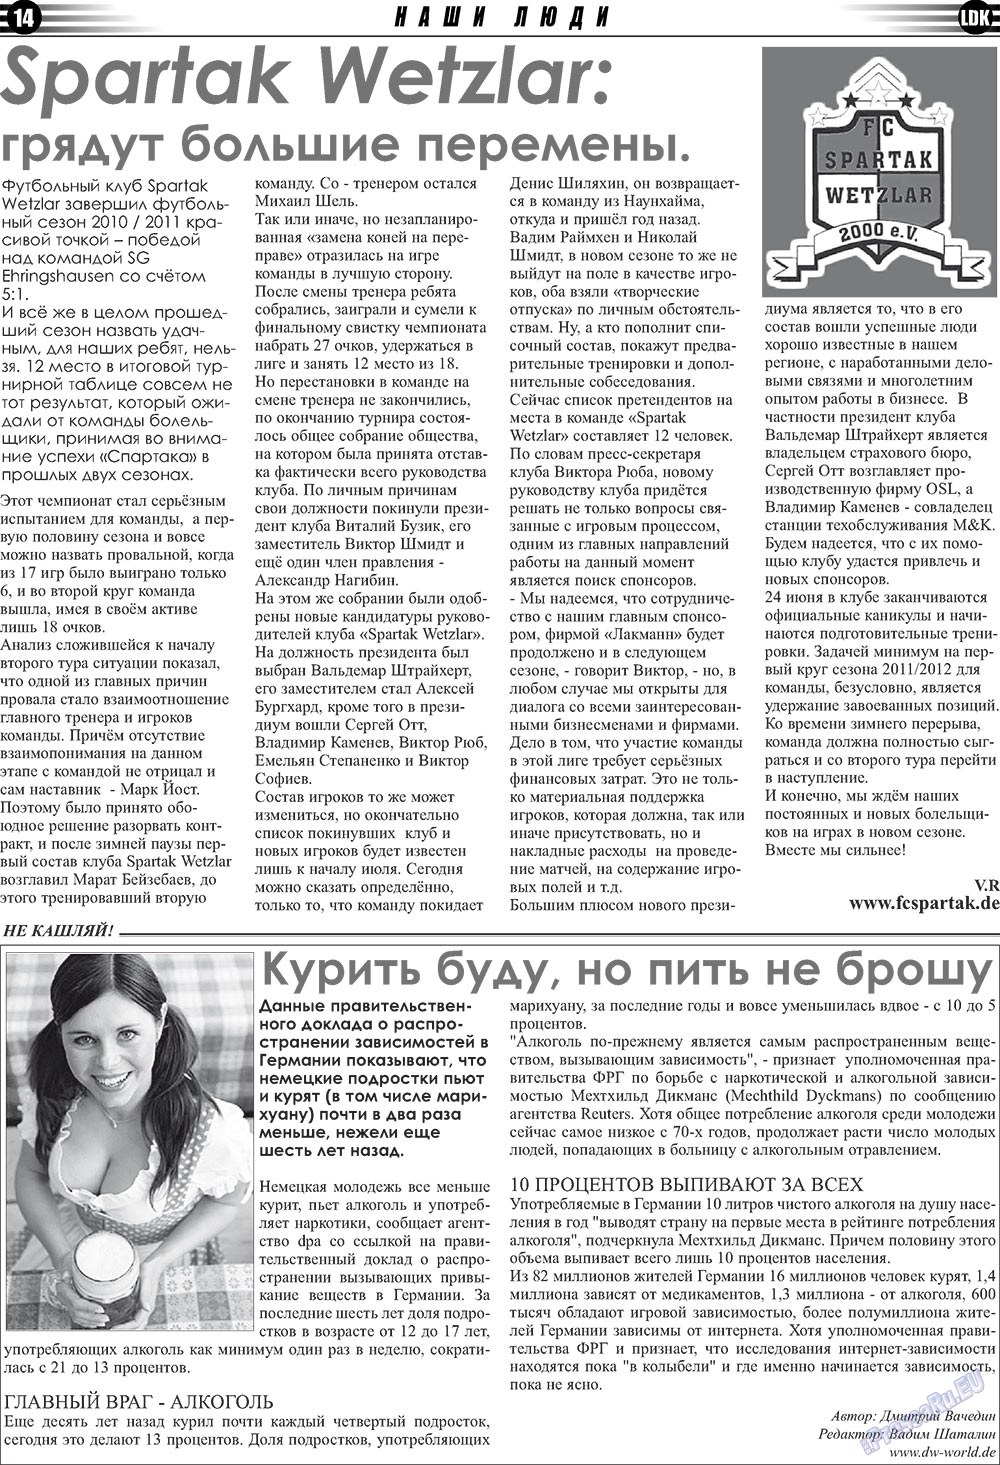 LDK по-русски (газета). 2011 год, номер 4, стр. 14